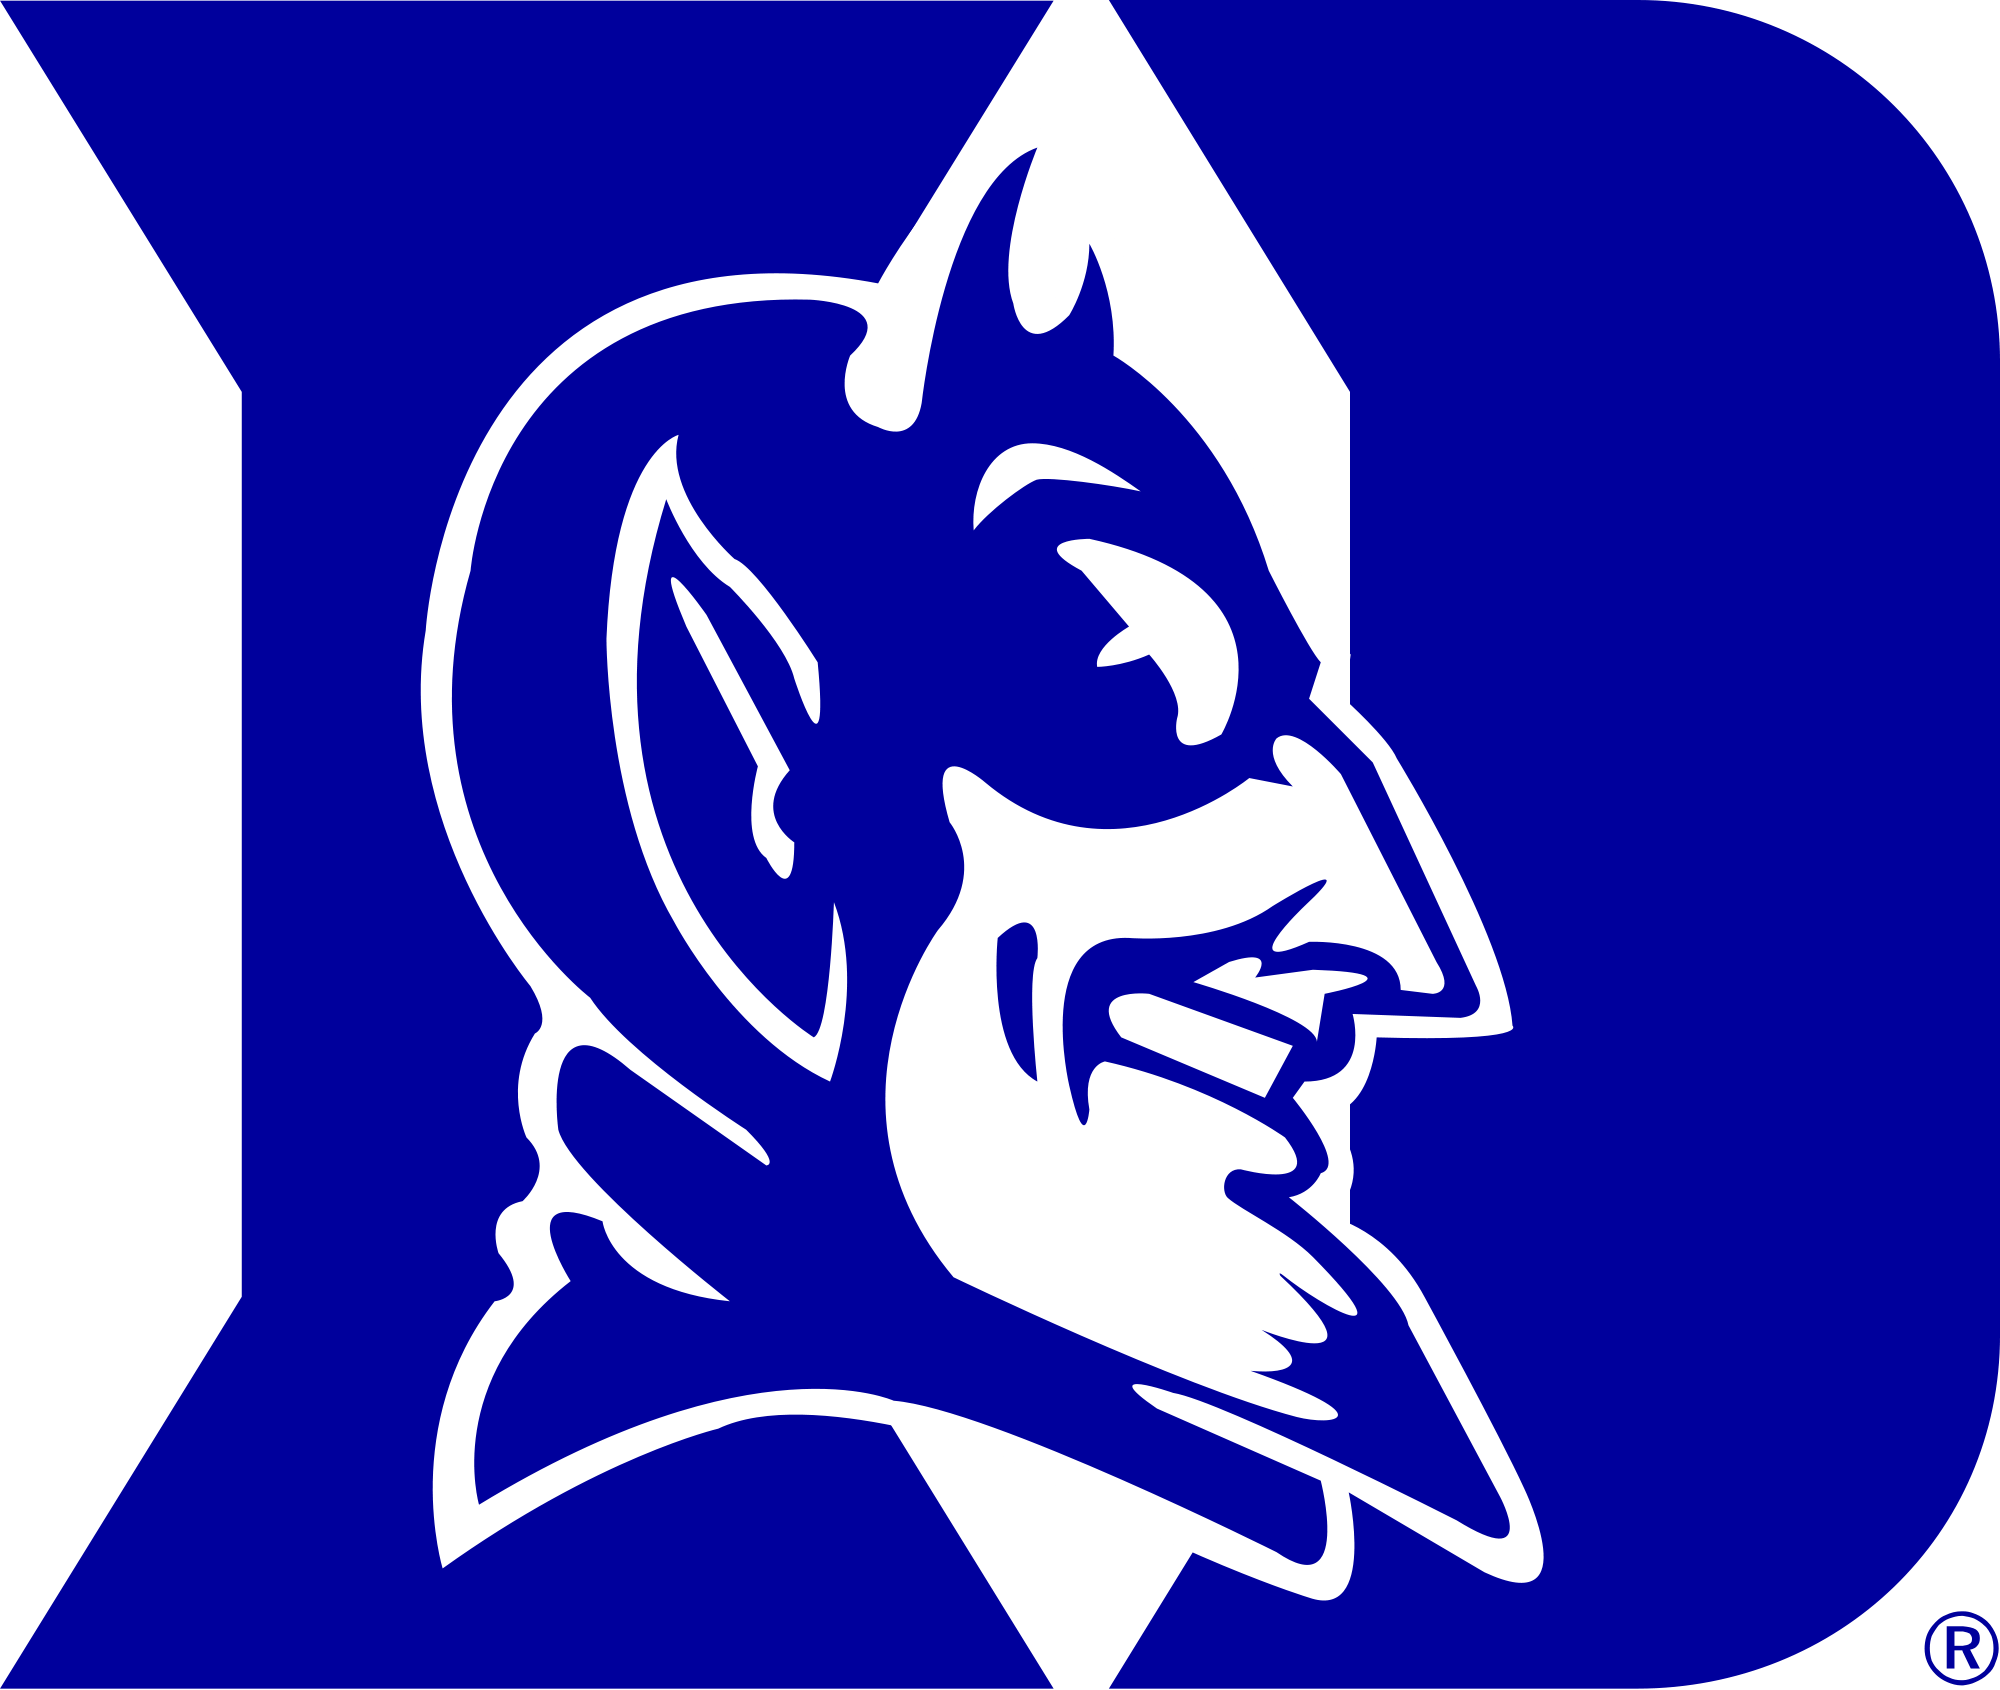 Duke Blue Devils Logo - File:Duke Blue Devils logo.svg - Wikimedia Commons